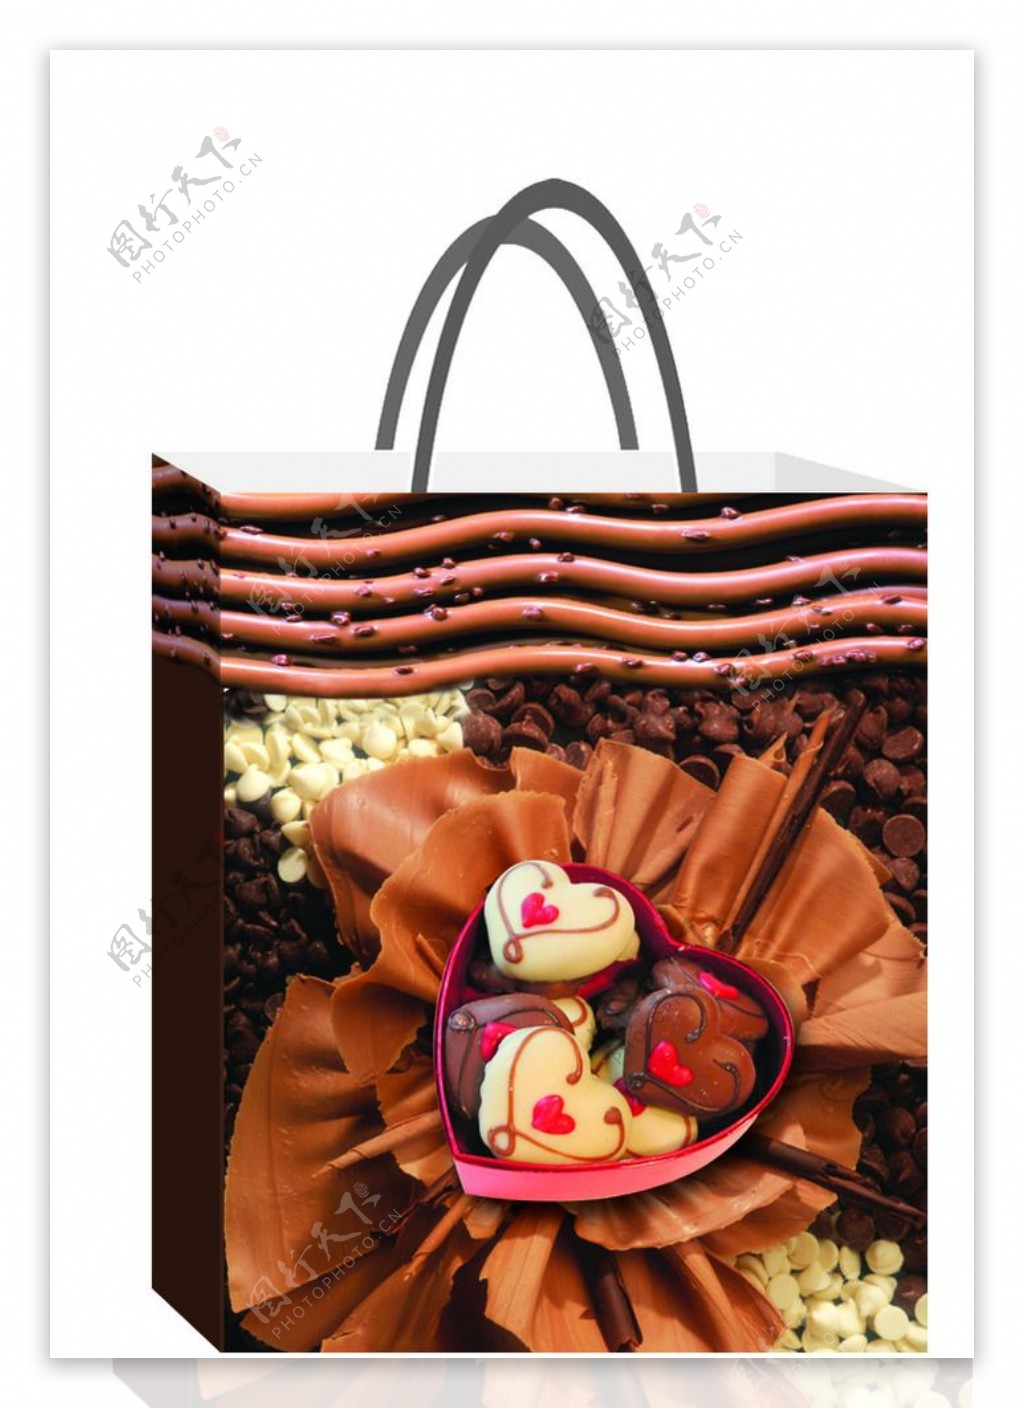 情人节巧克力礼品袋图片